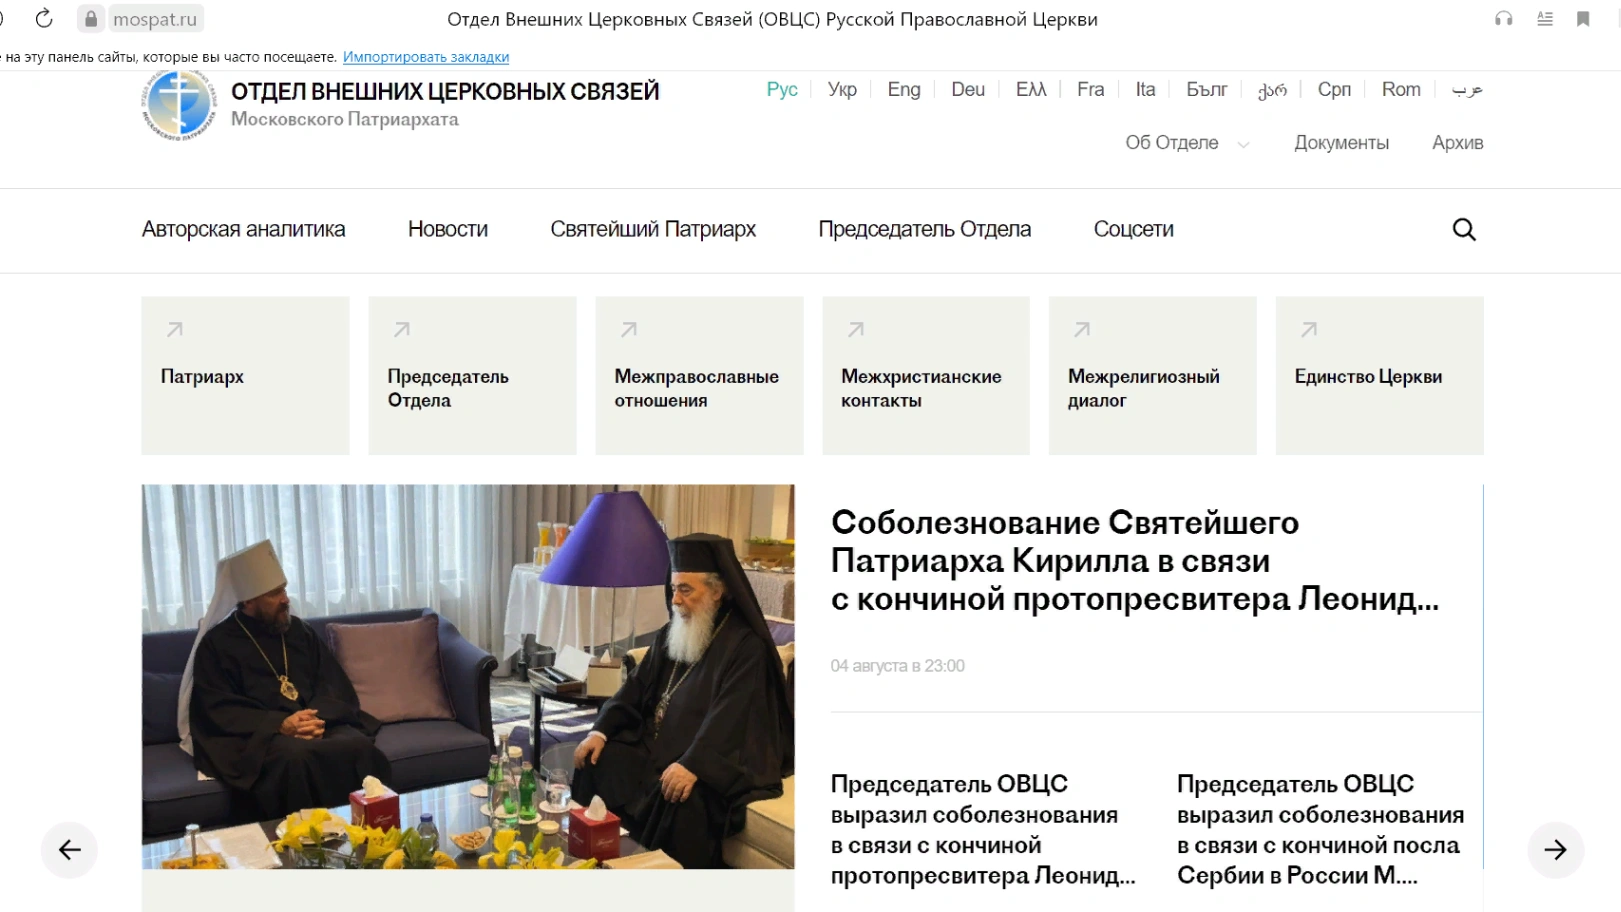 إنشاء موقع على شبكة الإنترنت يغطي الأنشطة الخارجية للكنيسة الأرثوذكسية الروسية